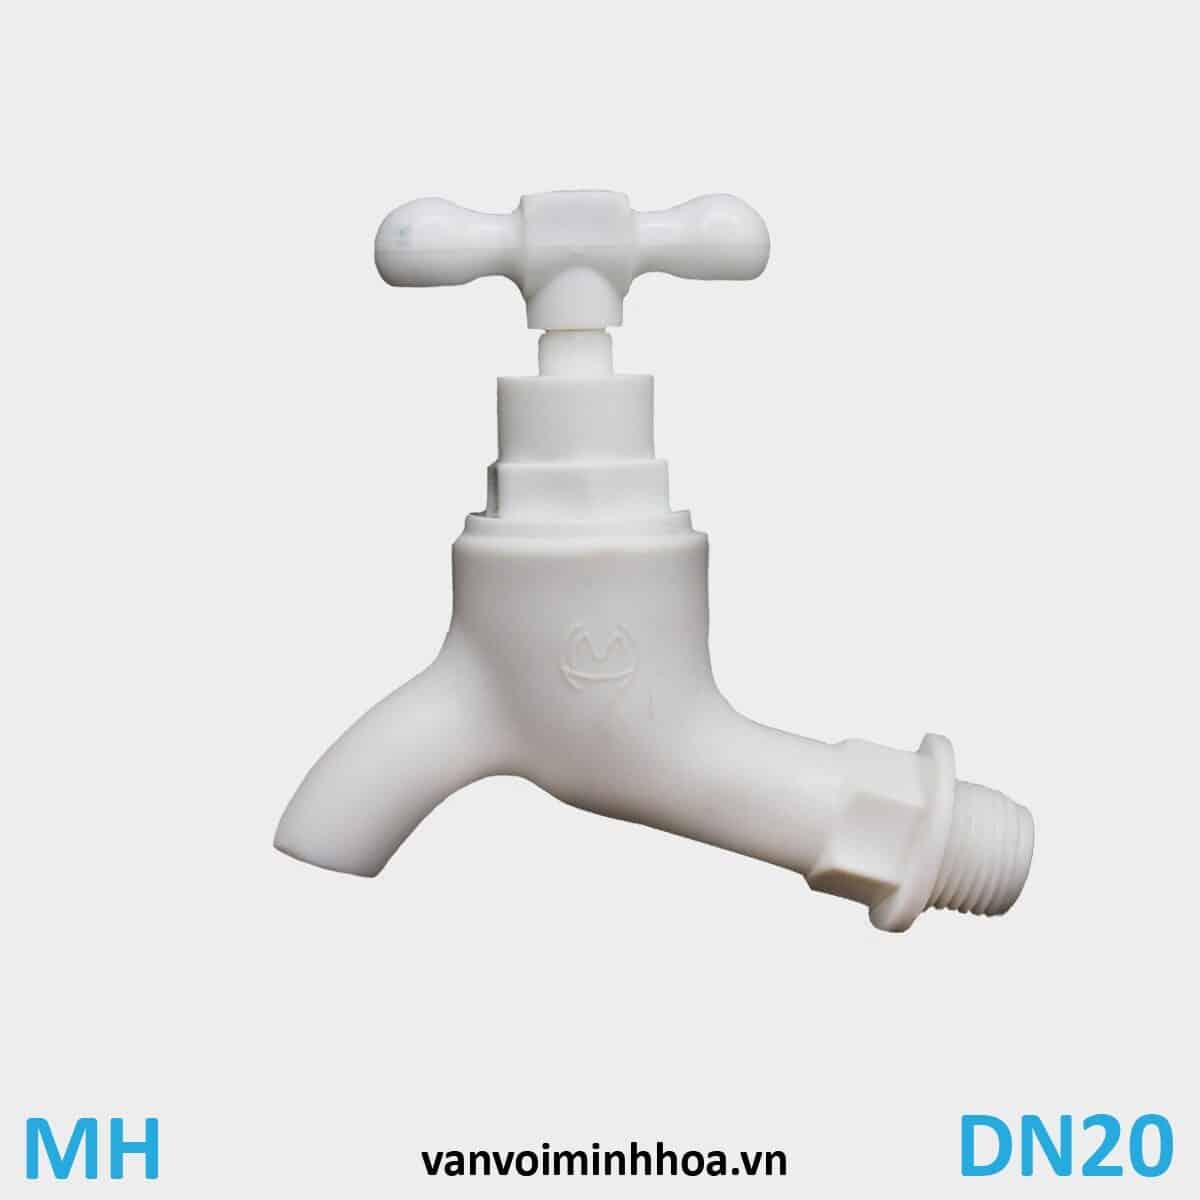 Vòi nước nhựa tay xoay MH DN20 Phi 27